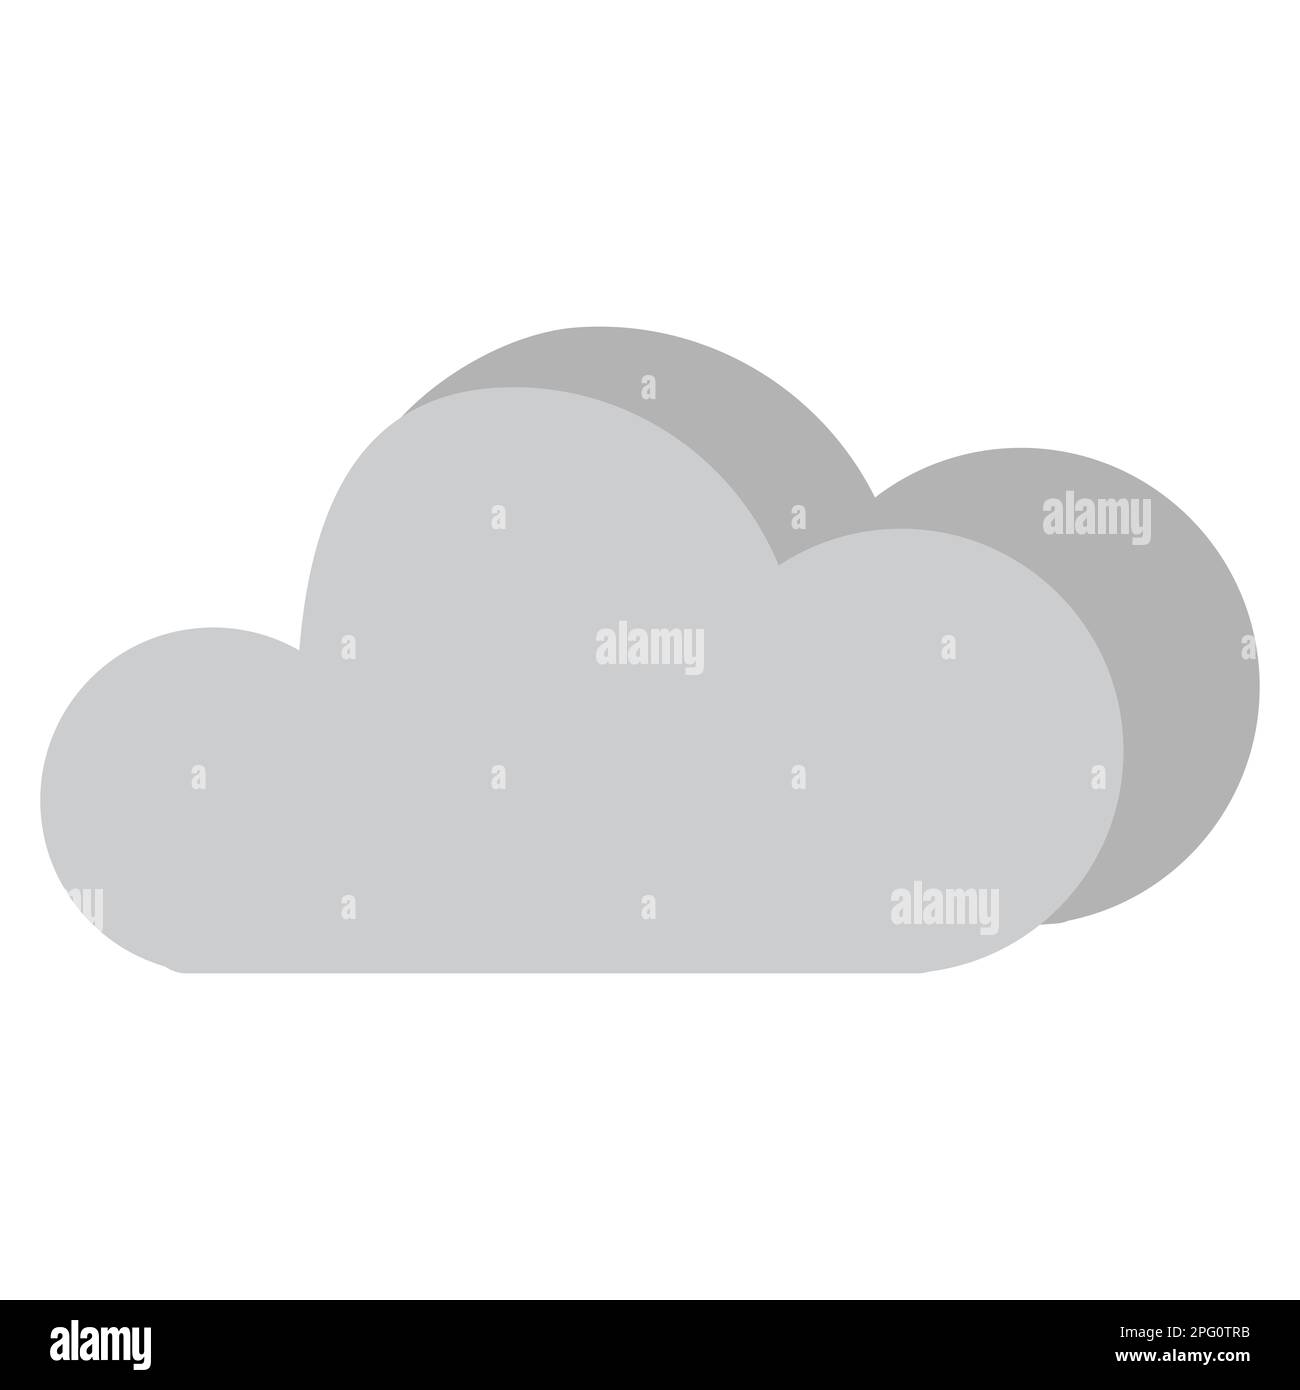 Icona del tempo nuvoloso, due nuvole, icona delle previsioni meteo per il tempo nuvoloso, adatta per i social media e l'icona dell'app, colori grigio e grigio scuro Foto Stock